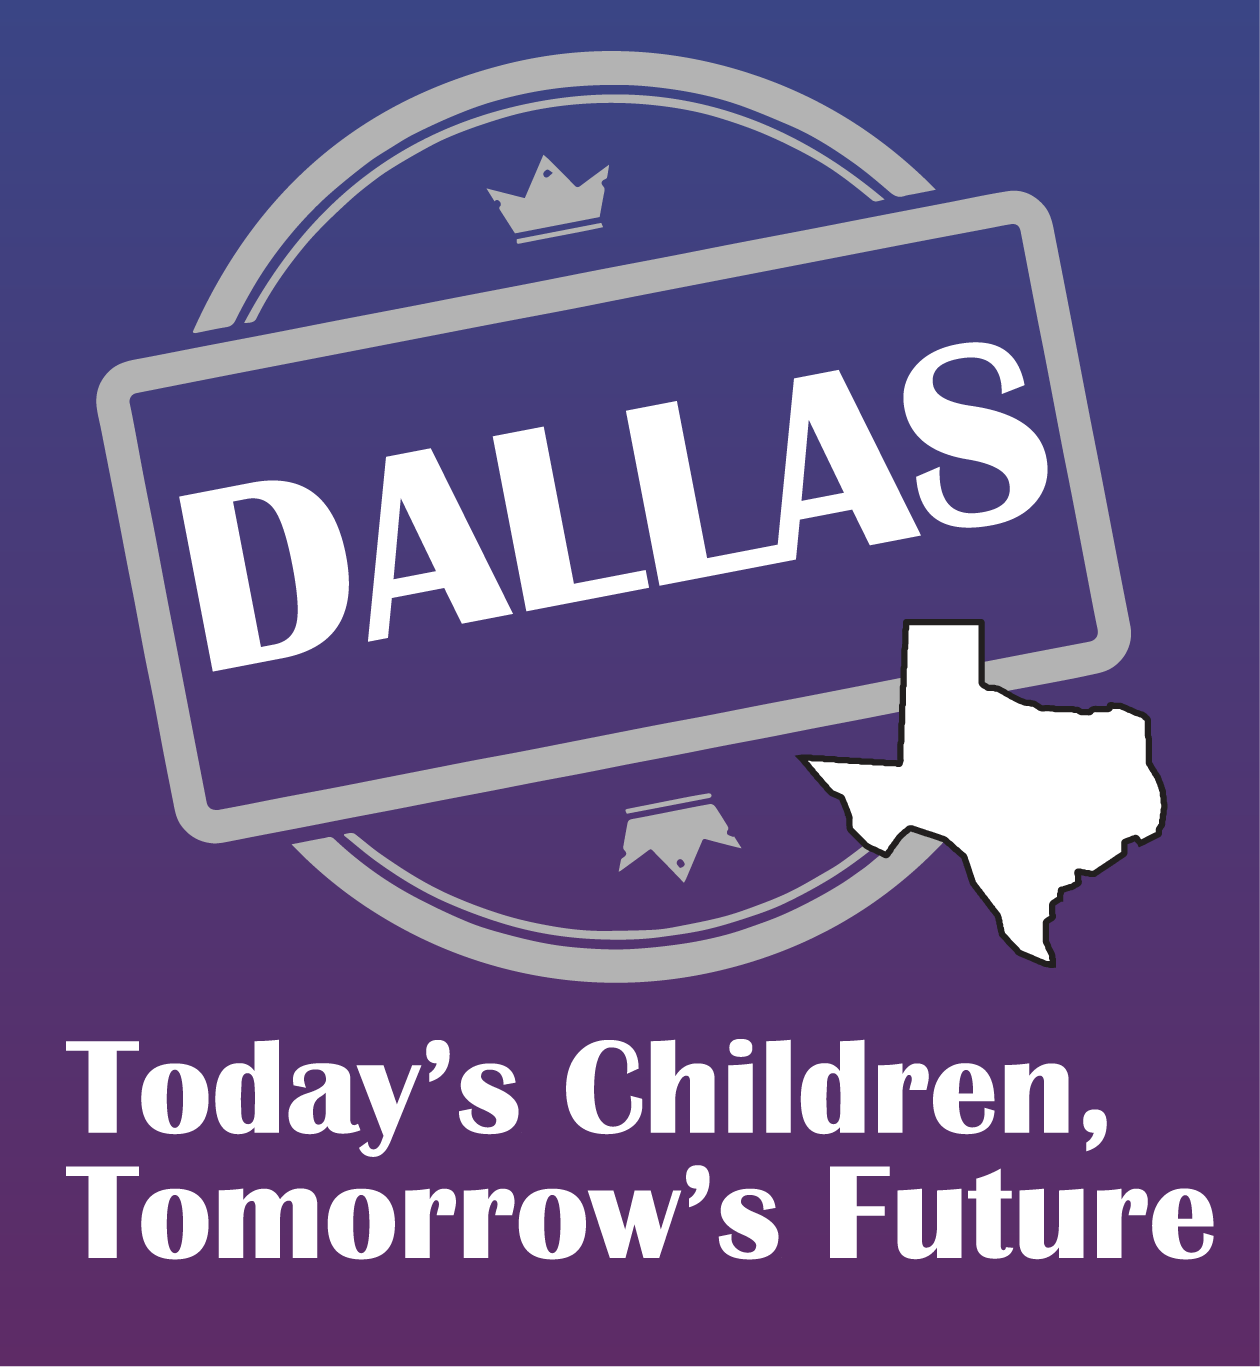 Image for Today's Children Tomorrow's Future - Dallas